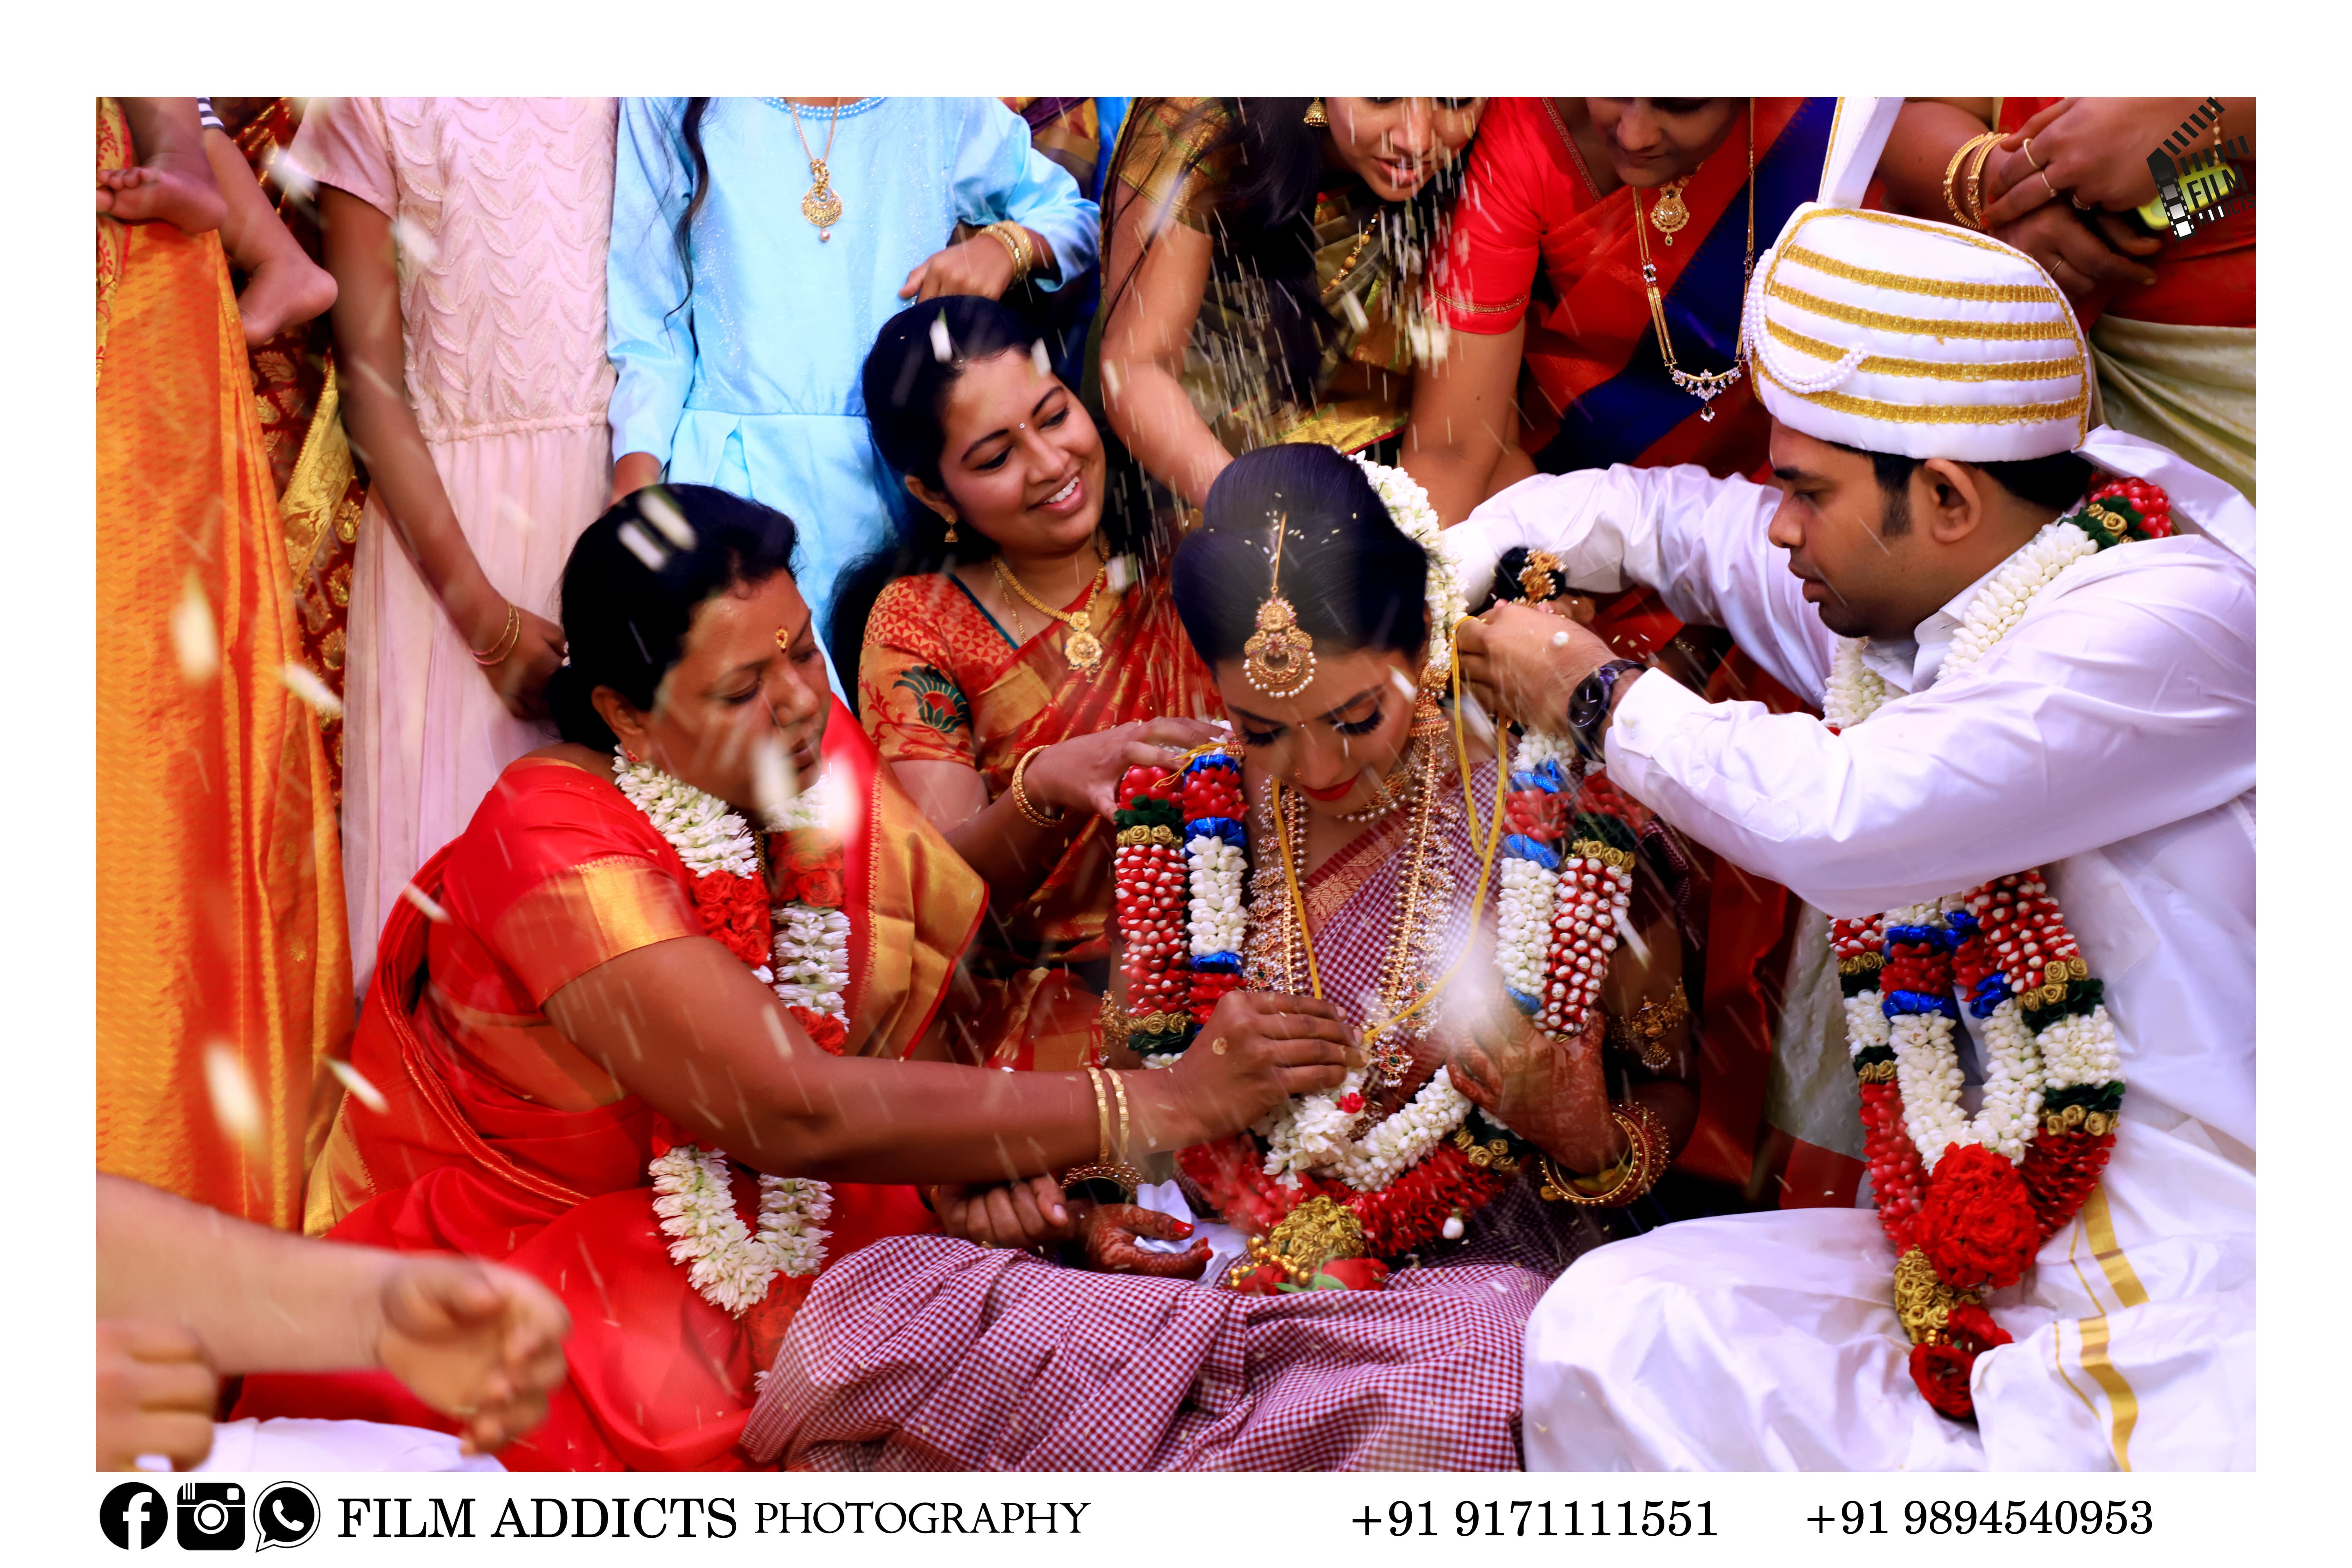 best-candid-photographers-in-Devakottai,Candid-photography-in-Devakottai,best-wedding -photography-in-Devakottai,Best-candid-photography-in-Devakottai,Best-candid-photographer,candid-photographer-in-Devakottai,drone-photographer-in-Devakottai,helicam-photographer-in-Devakottai,candid-wedding-photographers-in-Devakottai,photographers-in-Devakottai,professional-wedding-photographers-in-Devakottai,top-wedding-filmmakers-in-Devakottai,wedding-cinematographers-in-Devakottai,wedding-cinimatography-in-Devakottai,wedding-photographers-in-Devakottai,wedding-teaser-in-Devakottai,asian-wedding-photography-in-Devakottai,best-candid-photographers-in-Devakottai,best-candid-videographers-in-Devakottai,best-photographers-in-Devakottai,best-wedding-photographers-in-Devakottai,best-nadar-wedding-photography-in-Devakottai,candid-photographers-in-Devakottai,destination-wedding-photographers-in-Devakottai,fashion-photographers-in-Devakottai, Devakottai-famous-stage-decorations